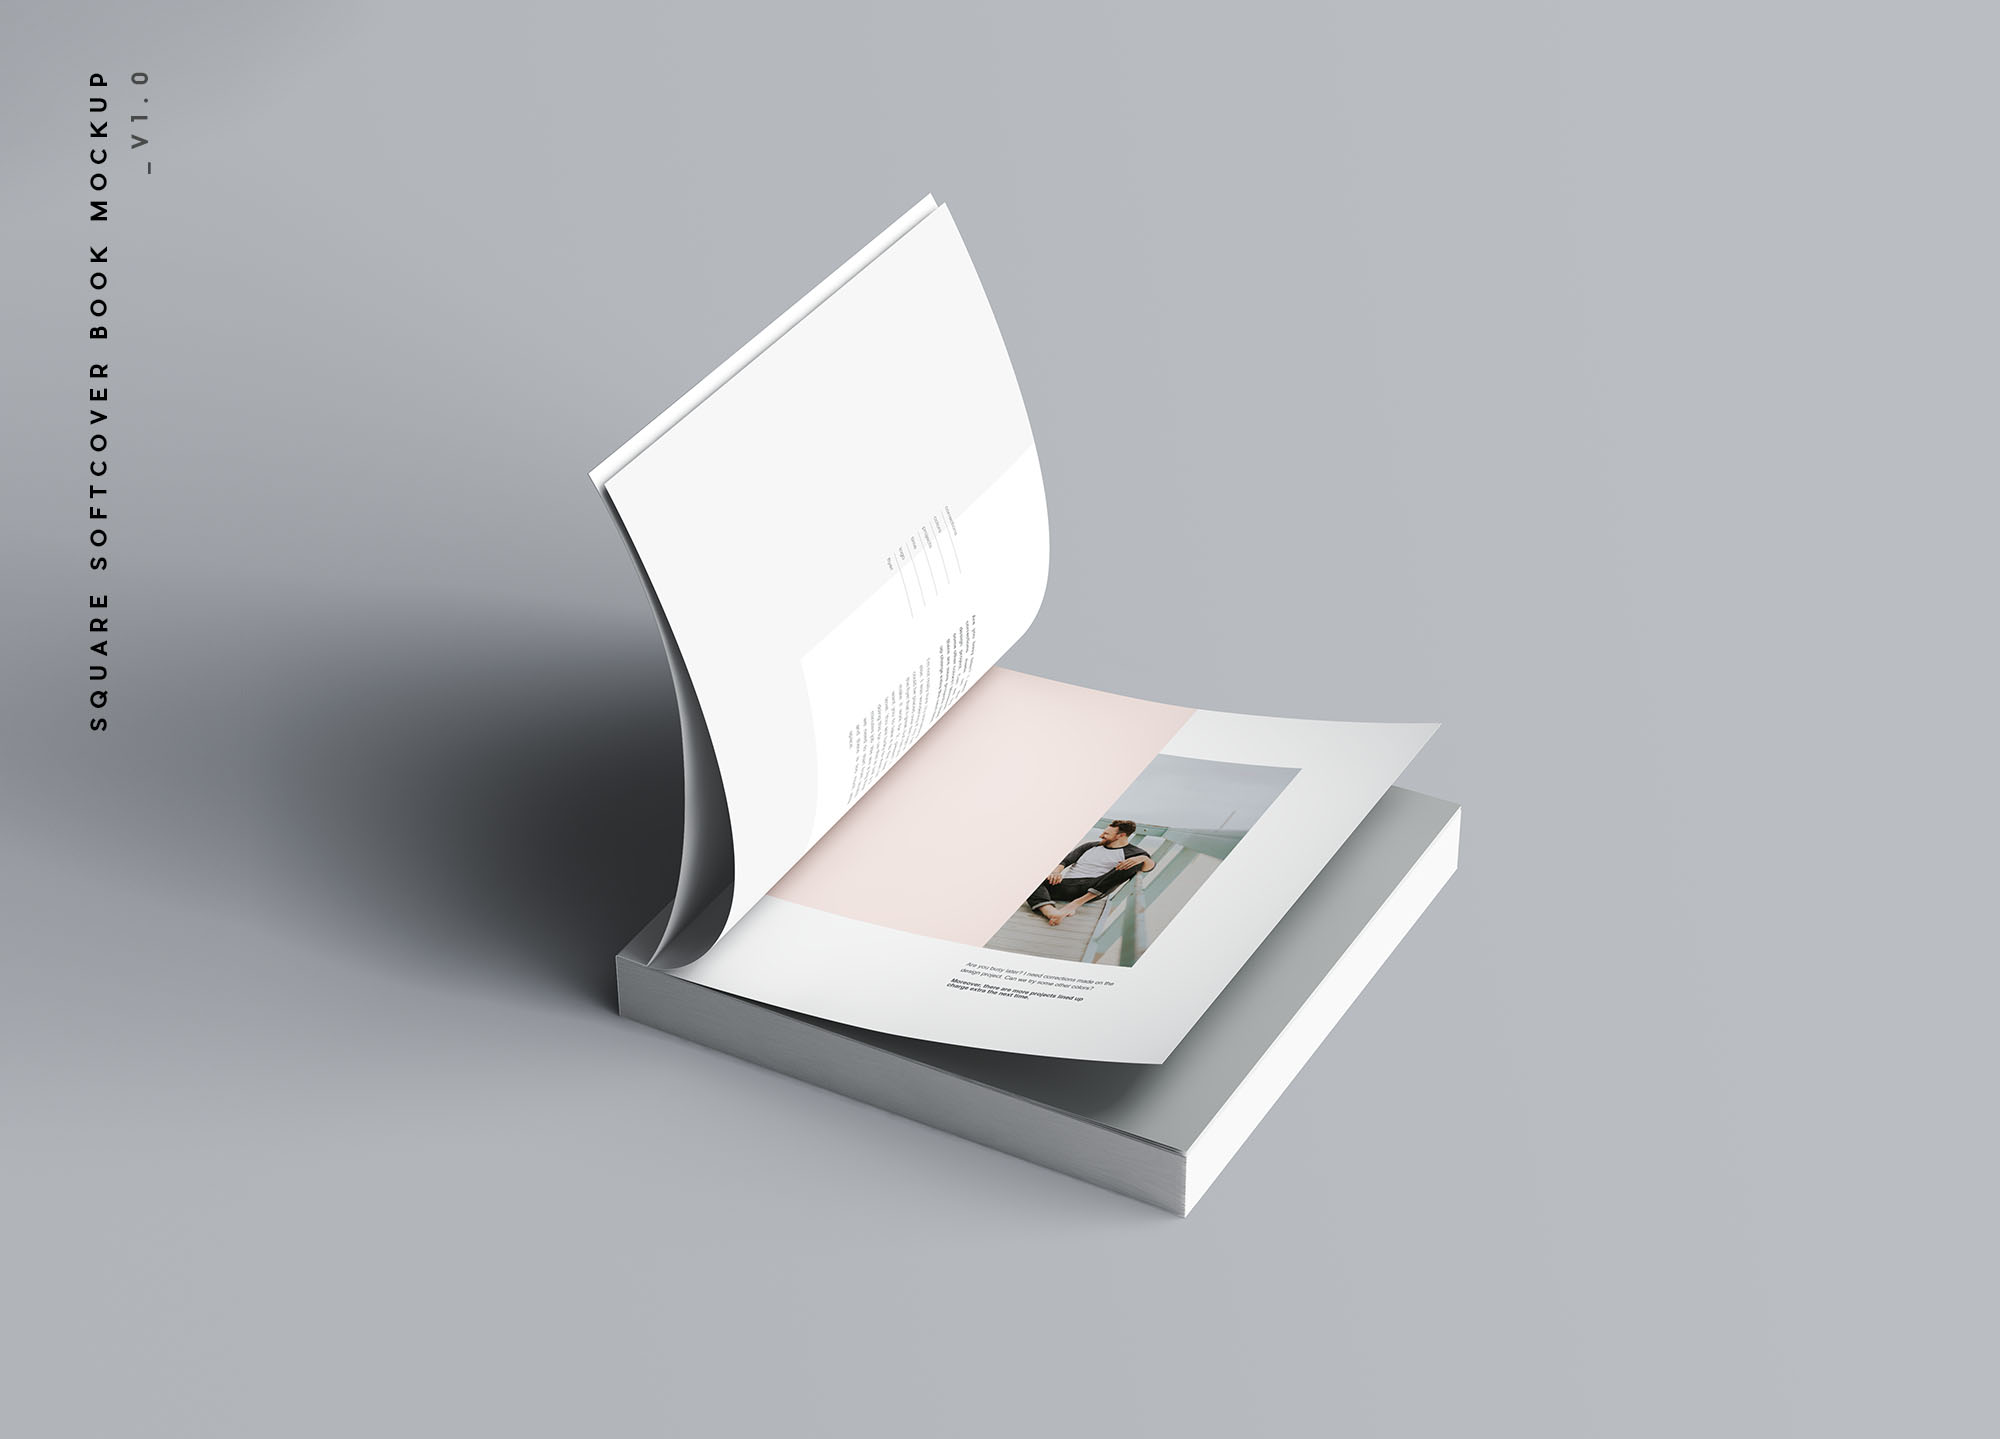 方形软封图书内页版式设计效果图样机普贤居精选 Square Softcover Book Mockup插图